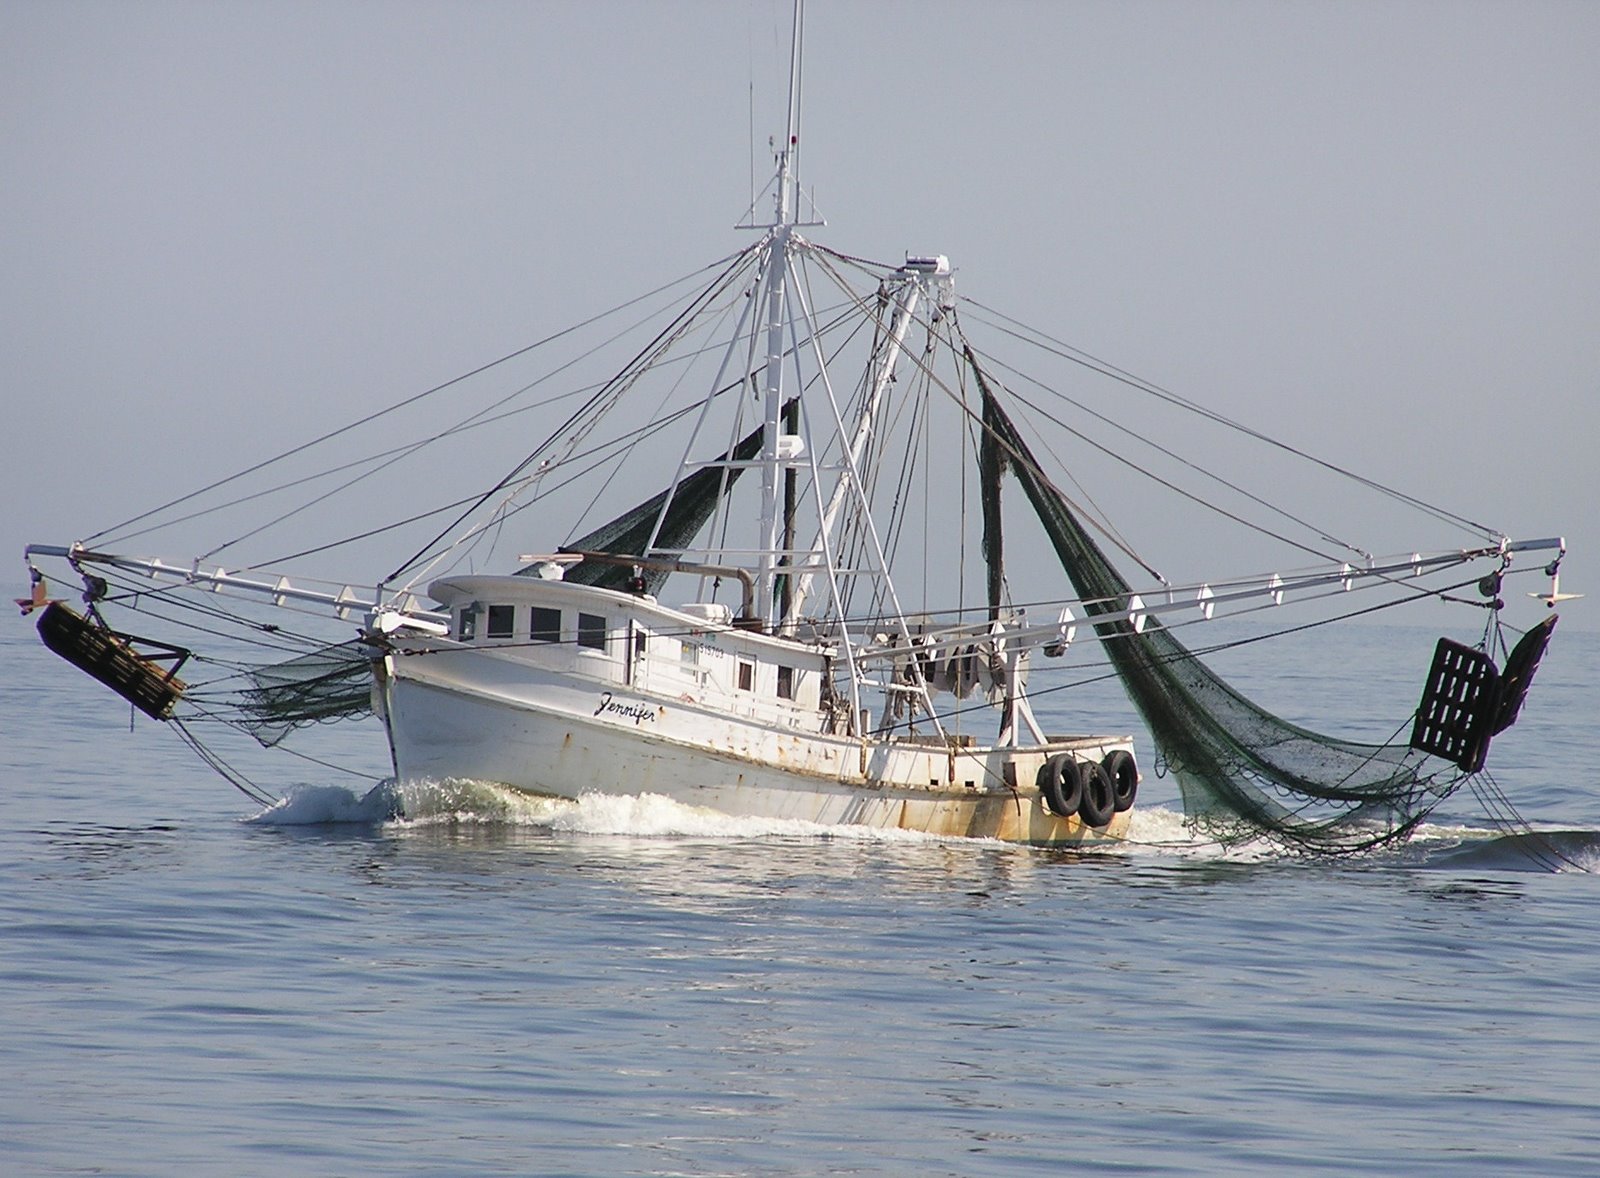 "Shrimp Boat at Sea in Black &amp; White" - A shrimp boat, The 